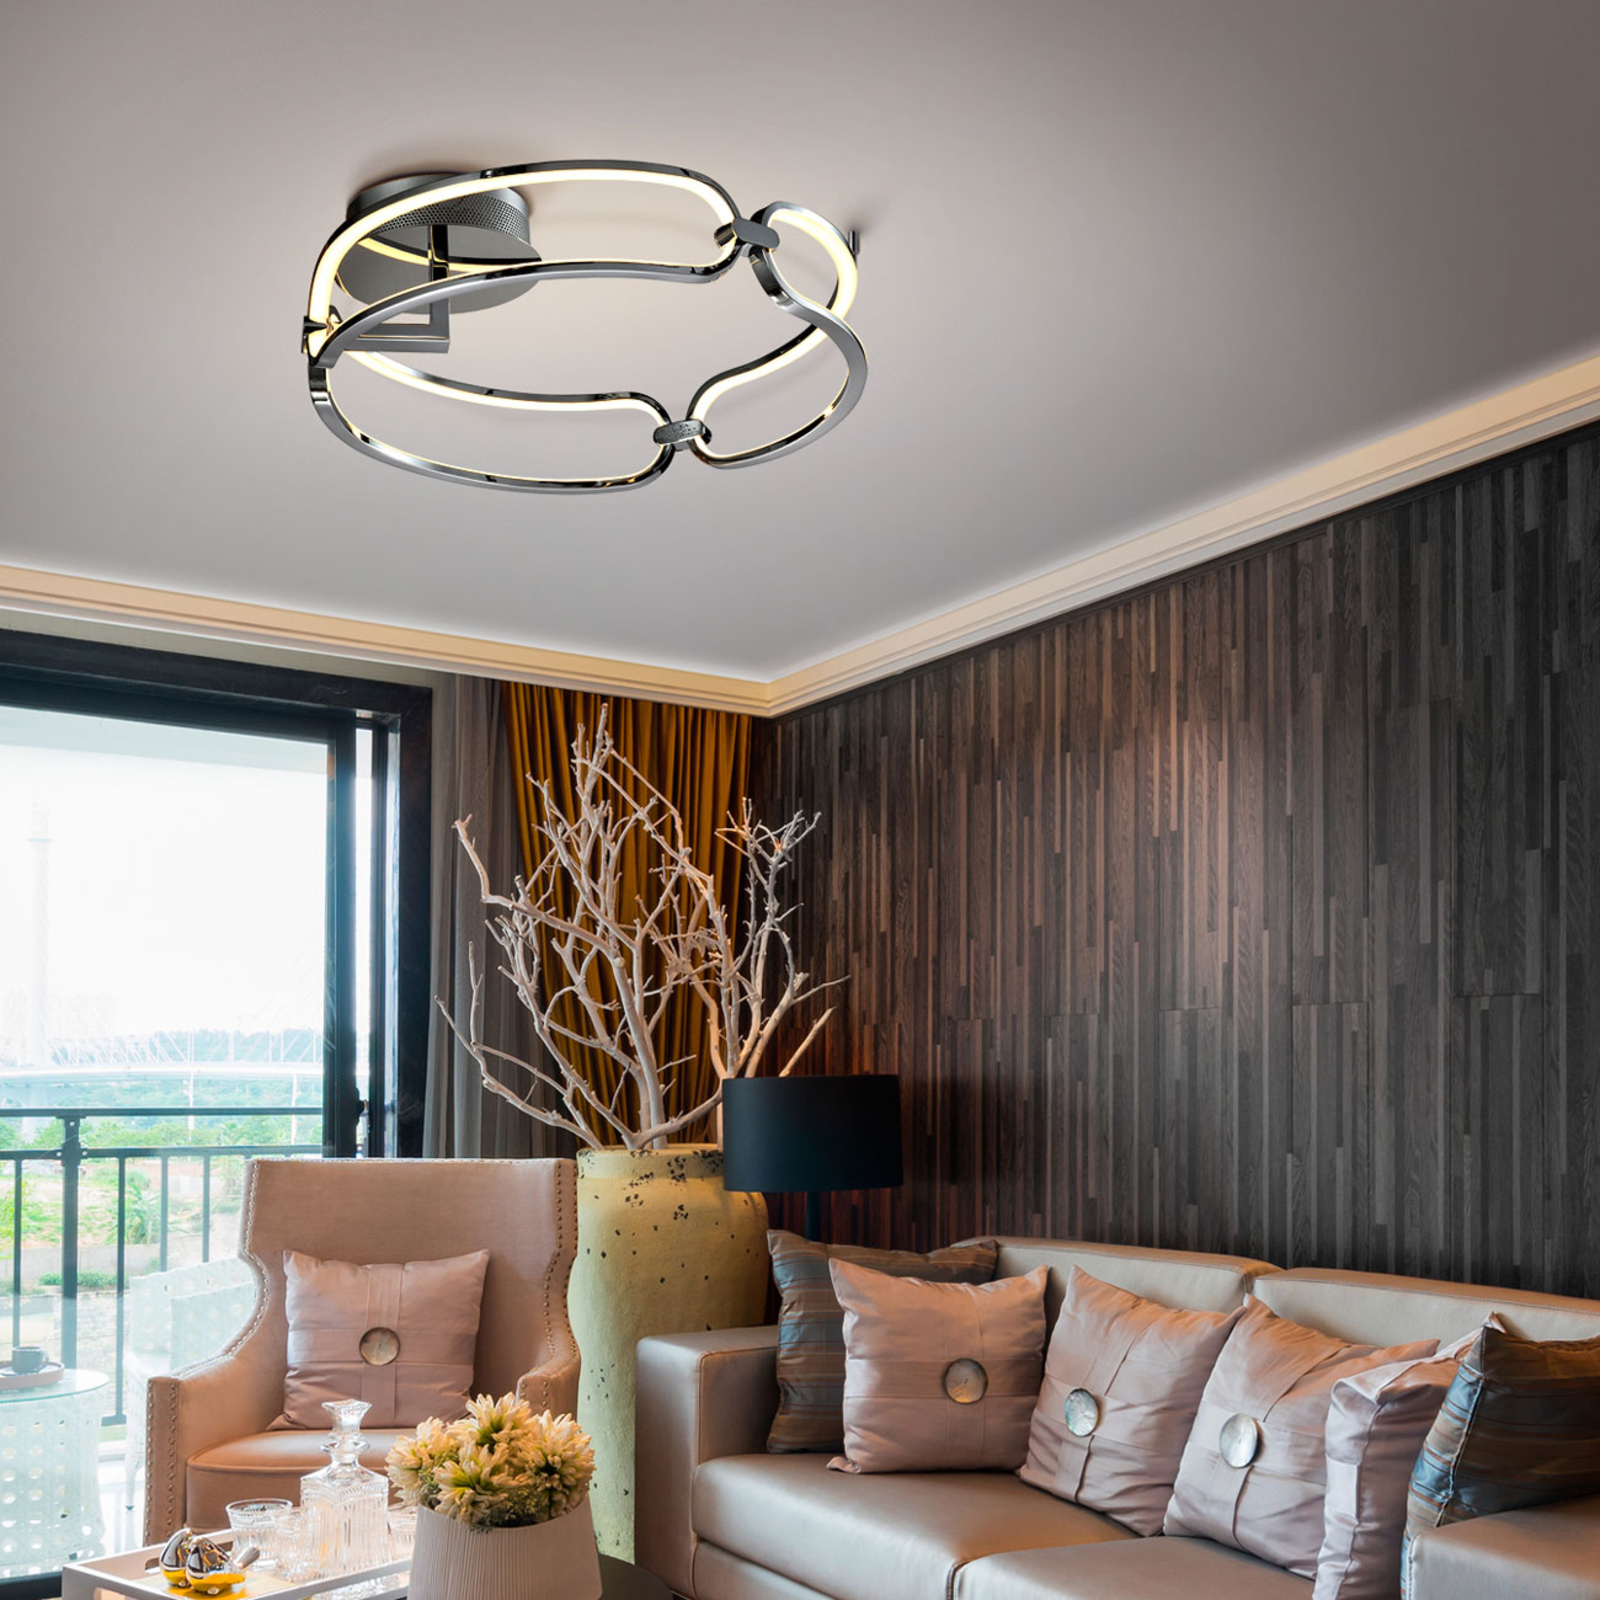 Colette LED ceiling light, three-bulb, chrome